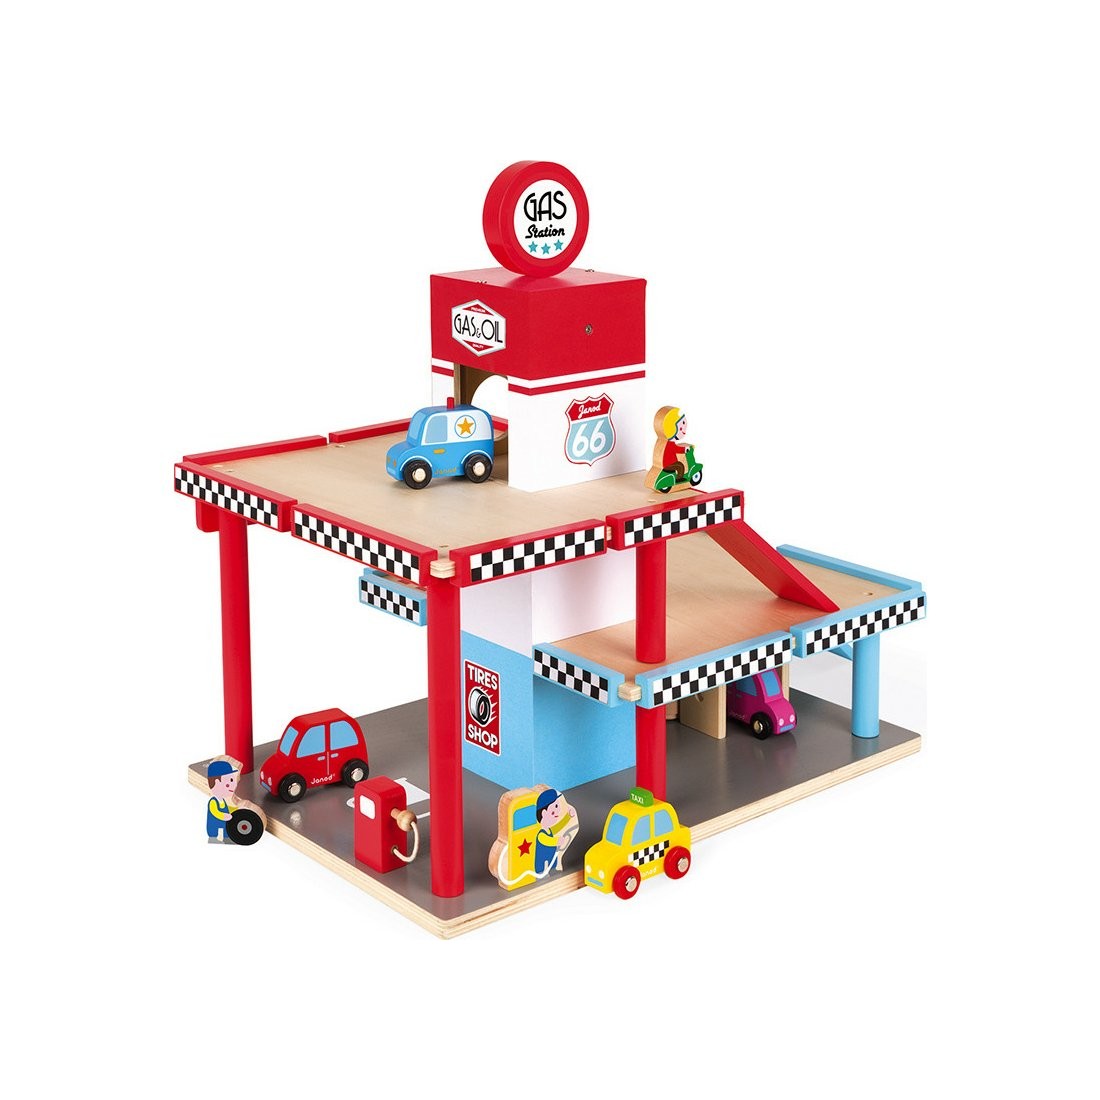 Garage jouet en bois enfant - station de lavage et station service Janod